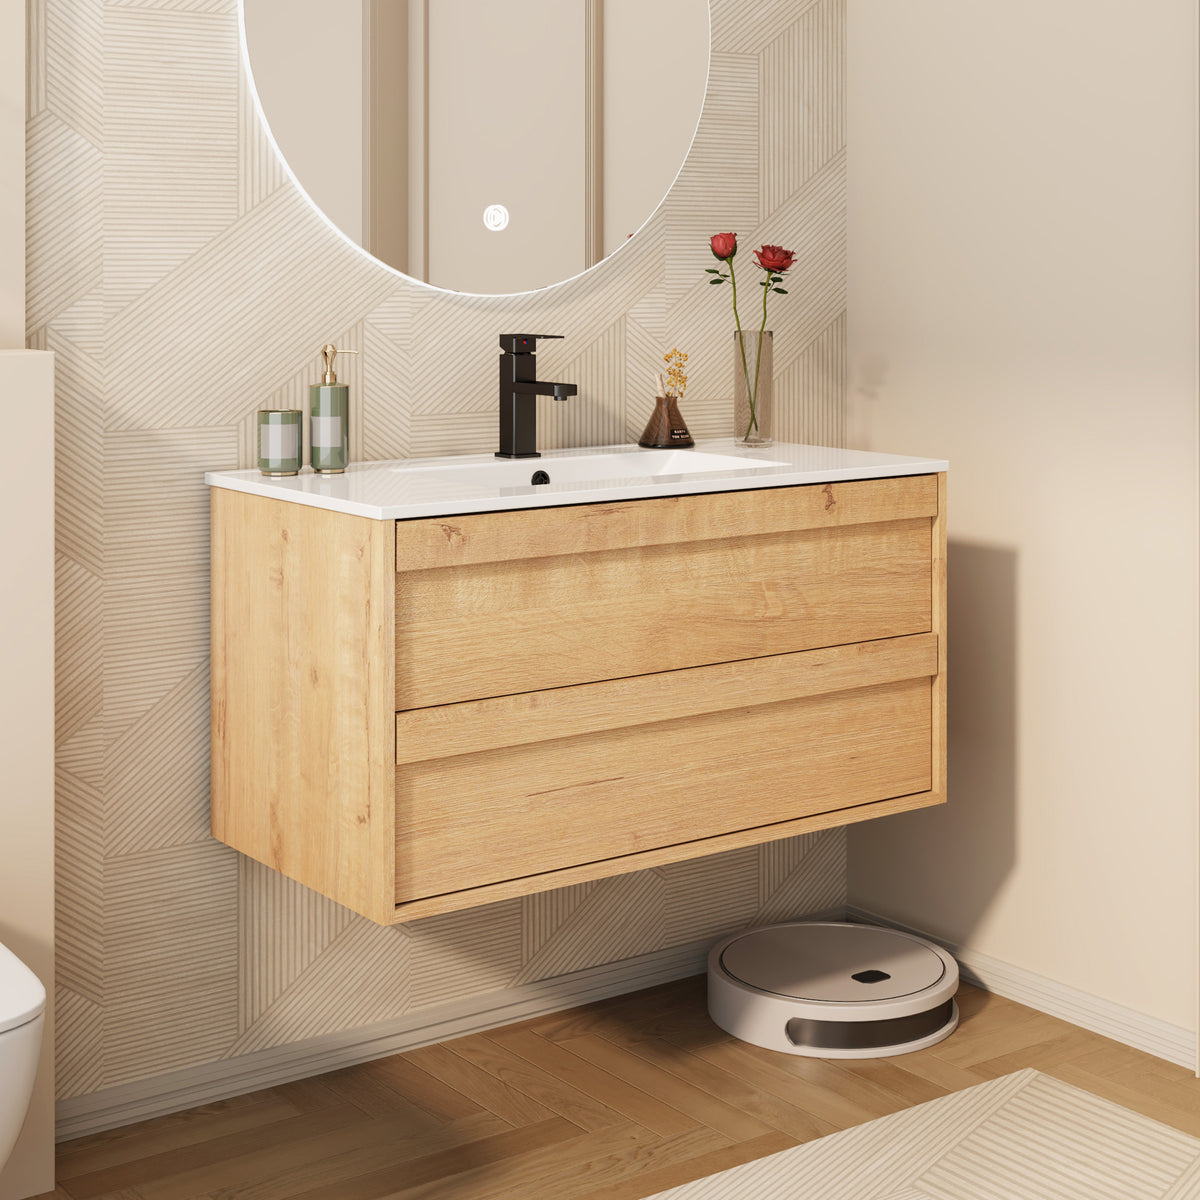 36" Wall Mounted Bathroom Vanity Combo with Single Undermount Sink — Oak